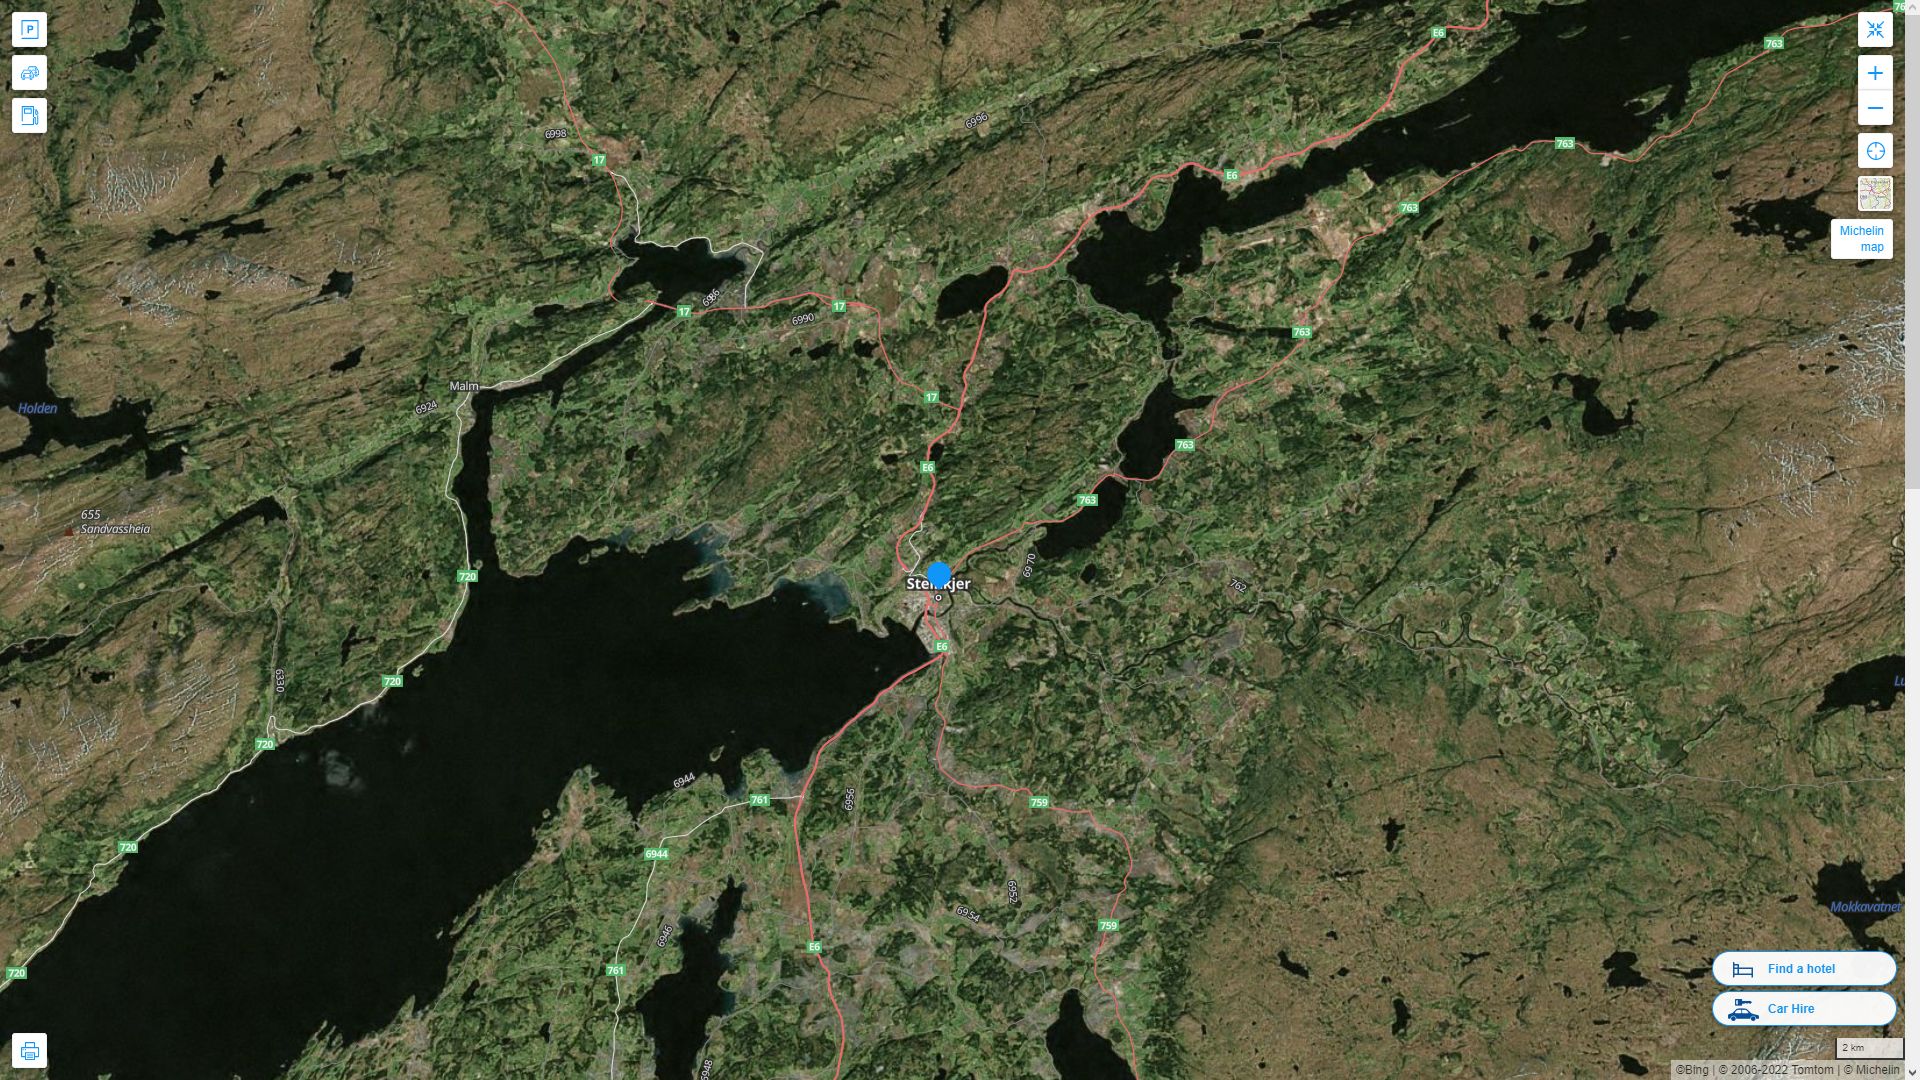 Steinkjer Norvege Autoroute et carte routiere avec vue satellite